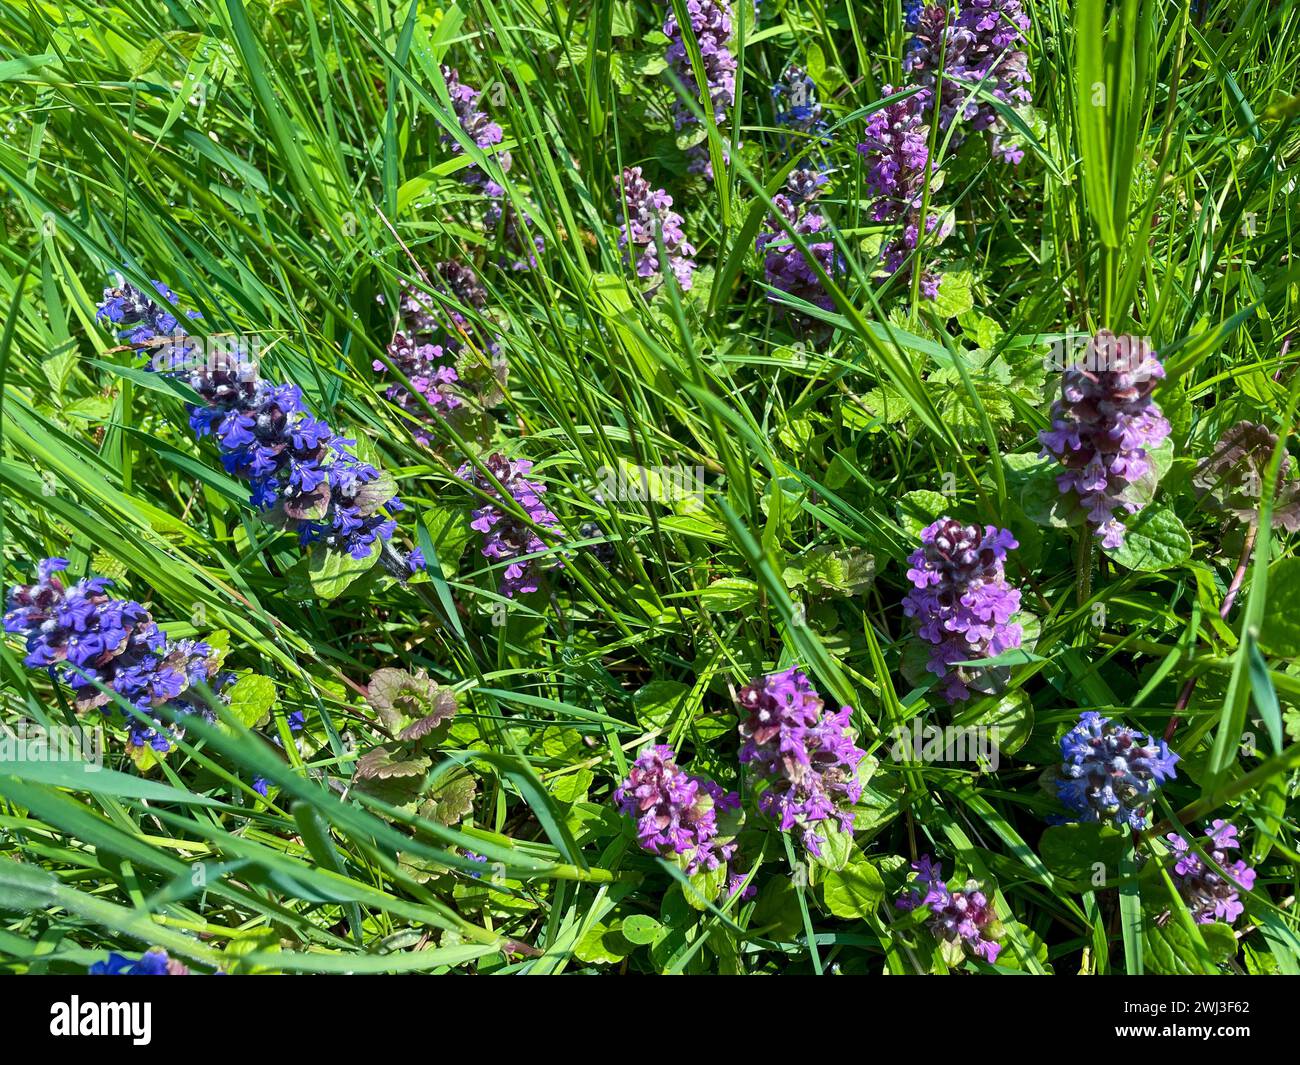 Kriechender Günsel mit blauen und violett farbenen Blüten auf einer Wiese Stock Photo